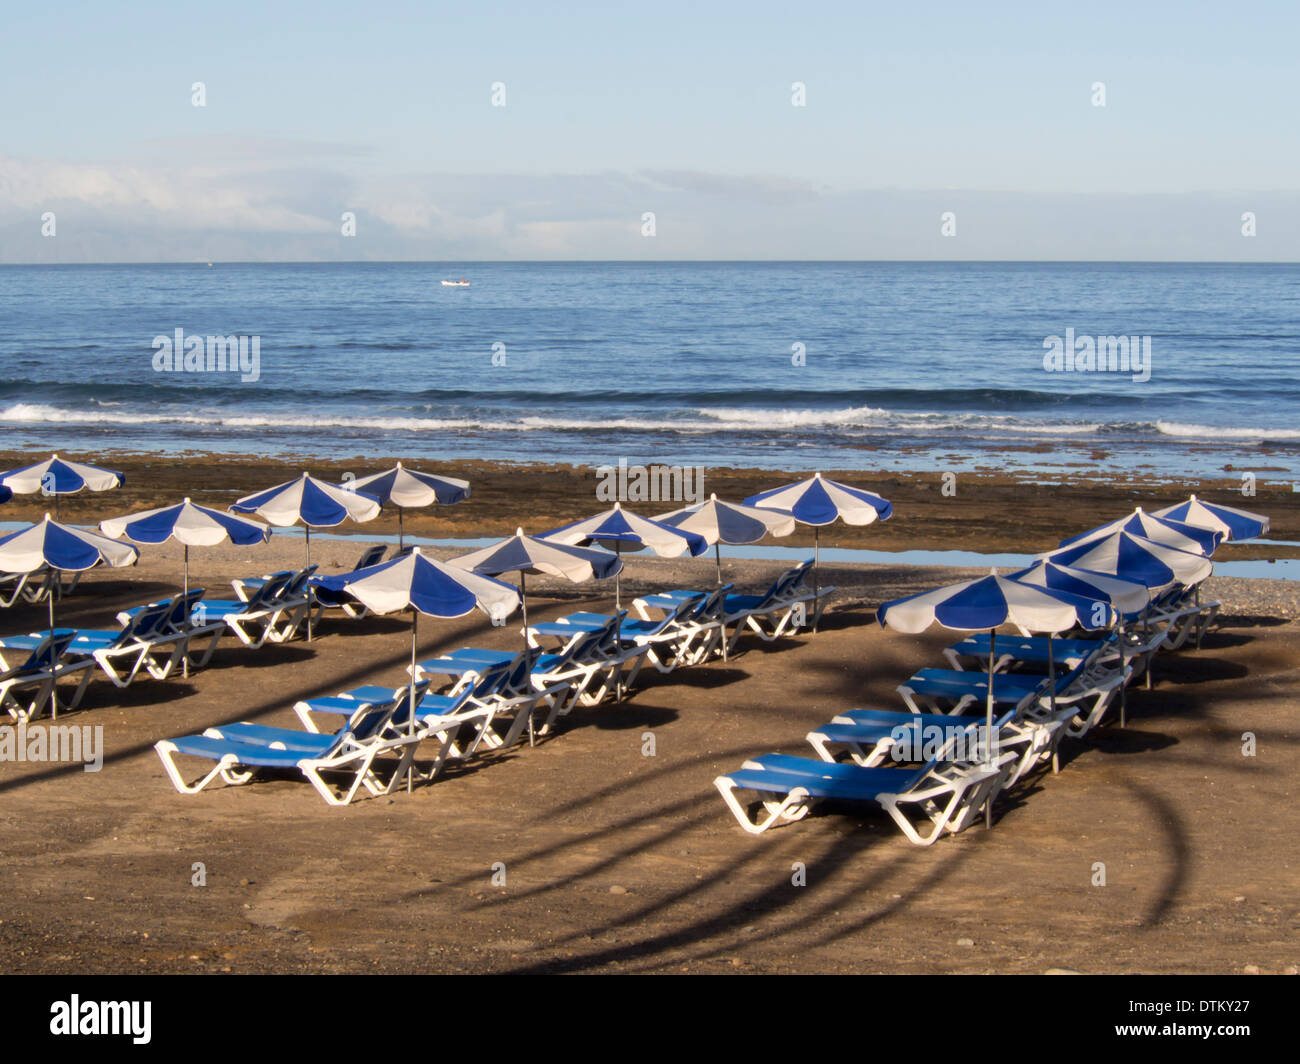 Mattina sulle spiagge di Playa de las Americas Tenerife Spagna lettini e ombrelloni pronti per il turista inset Foto Stock